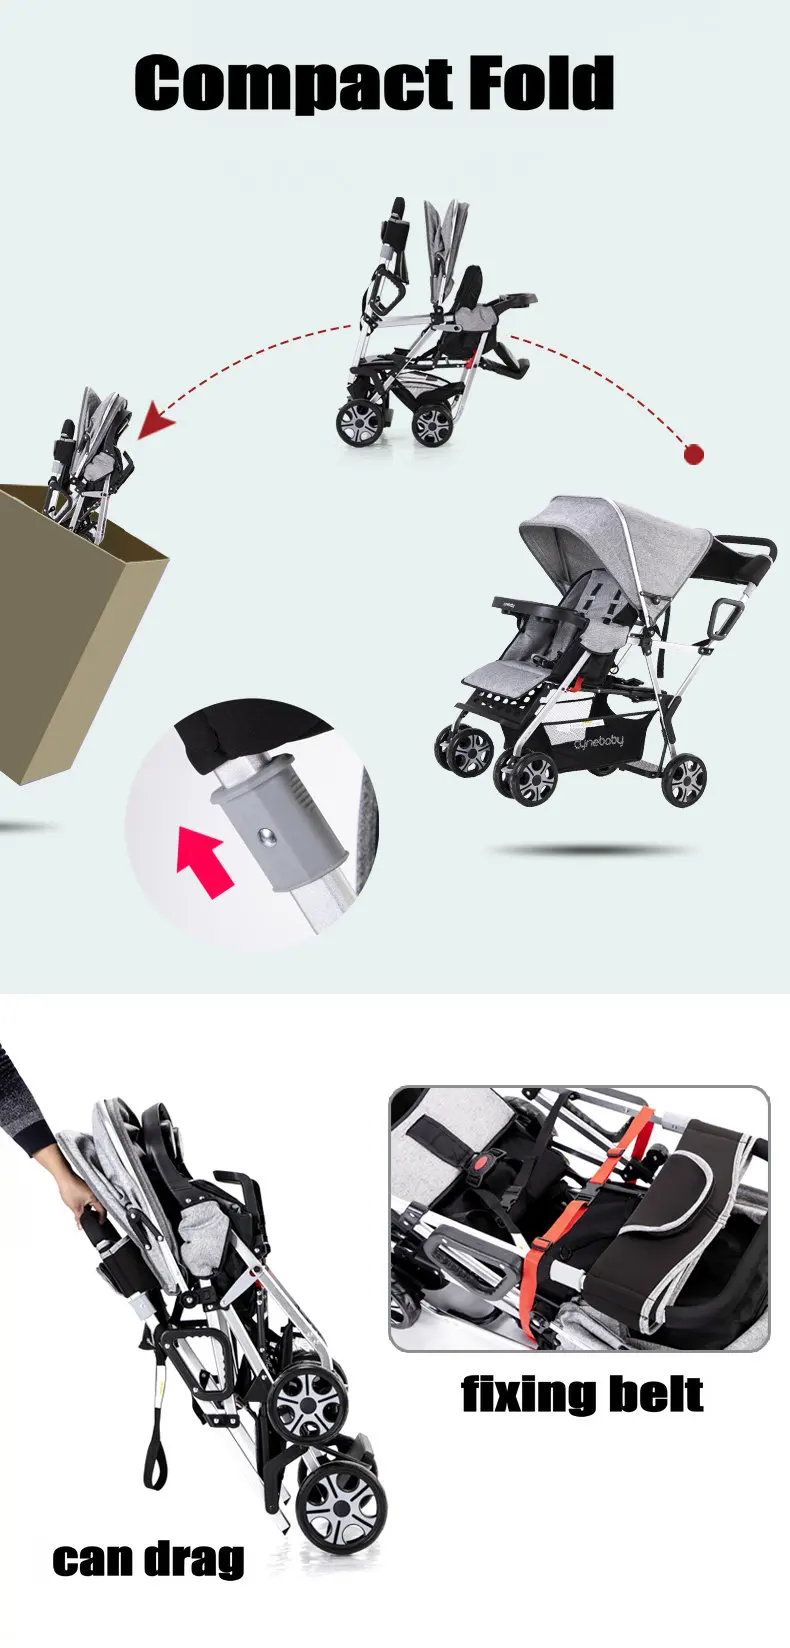 Прогулочная коляска в городском стиле, двойная коляска для маленьких девочек и мальчиков, может лежать устойчивая коляска с каркасом и сумкой